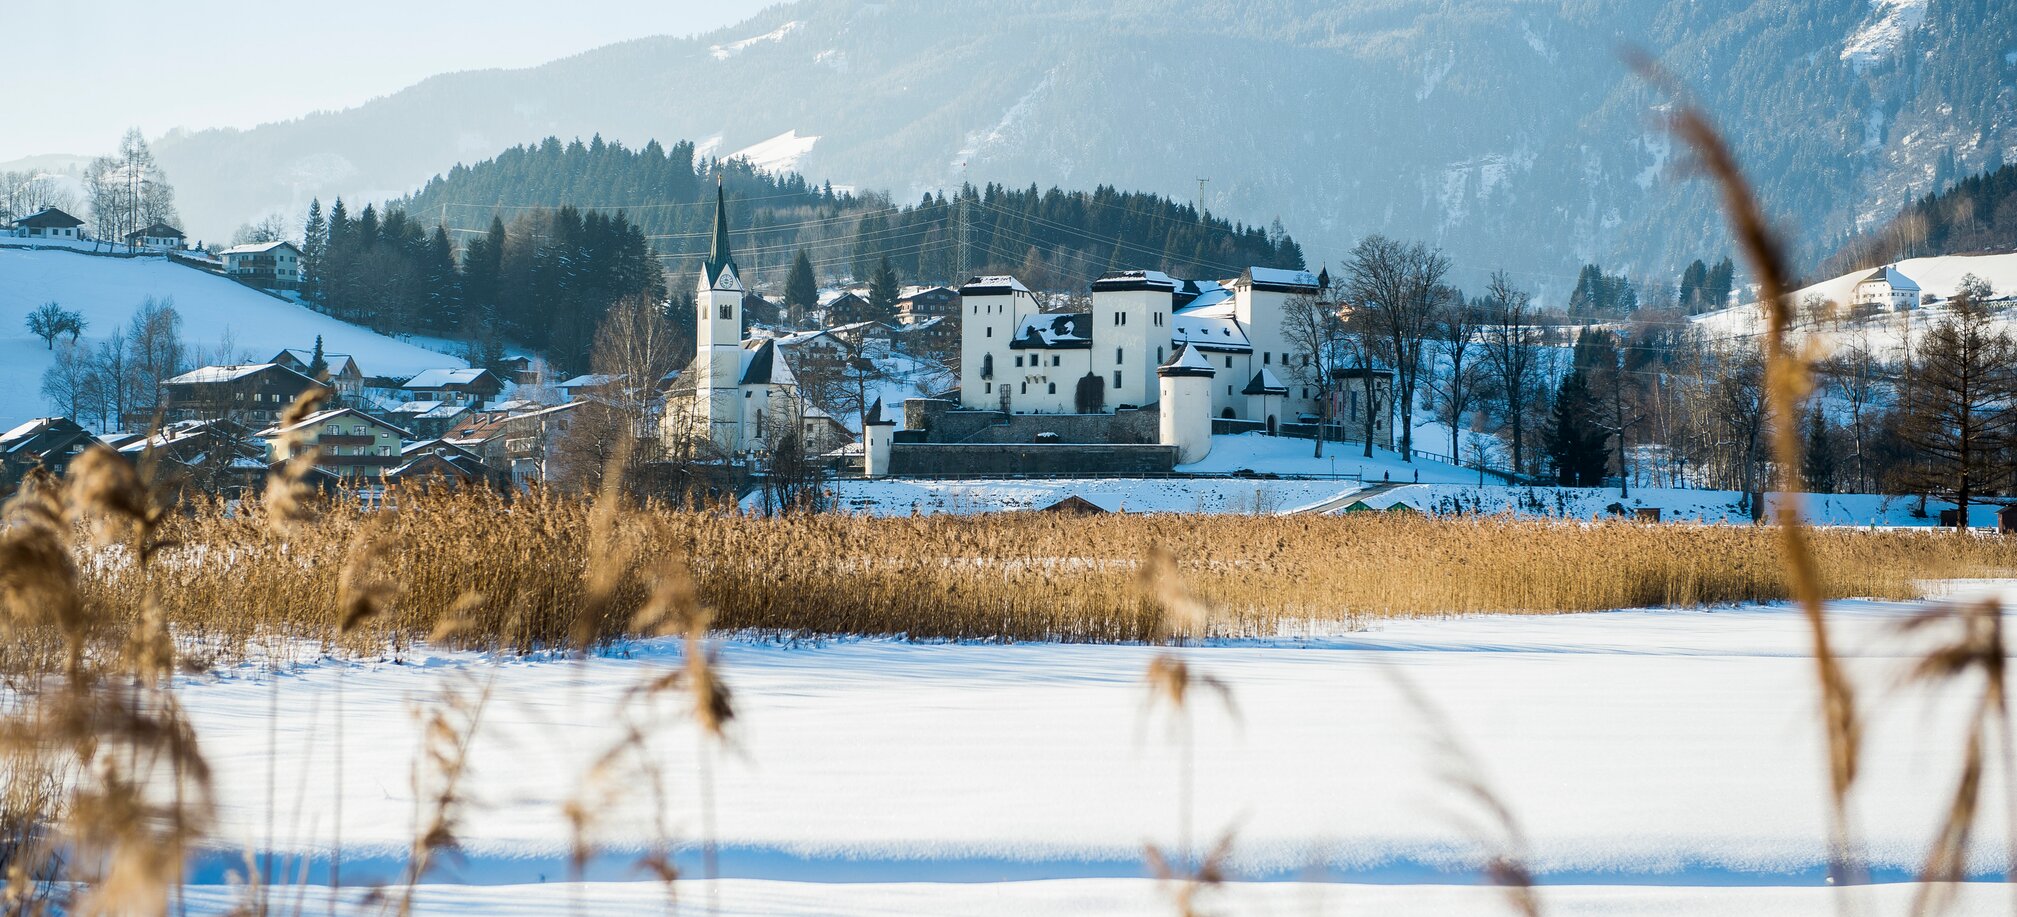 The village of Goldegg in winter | © Reidinger